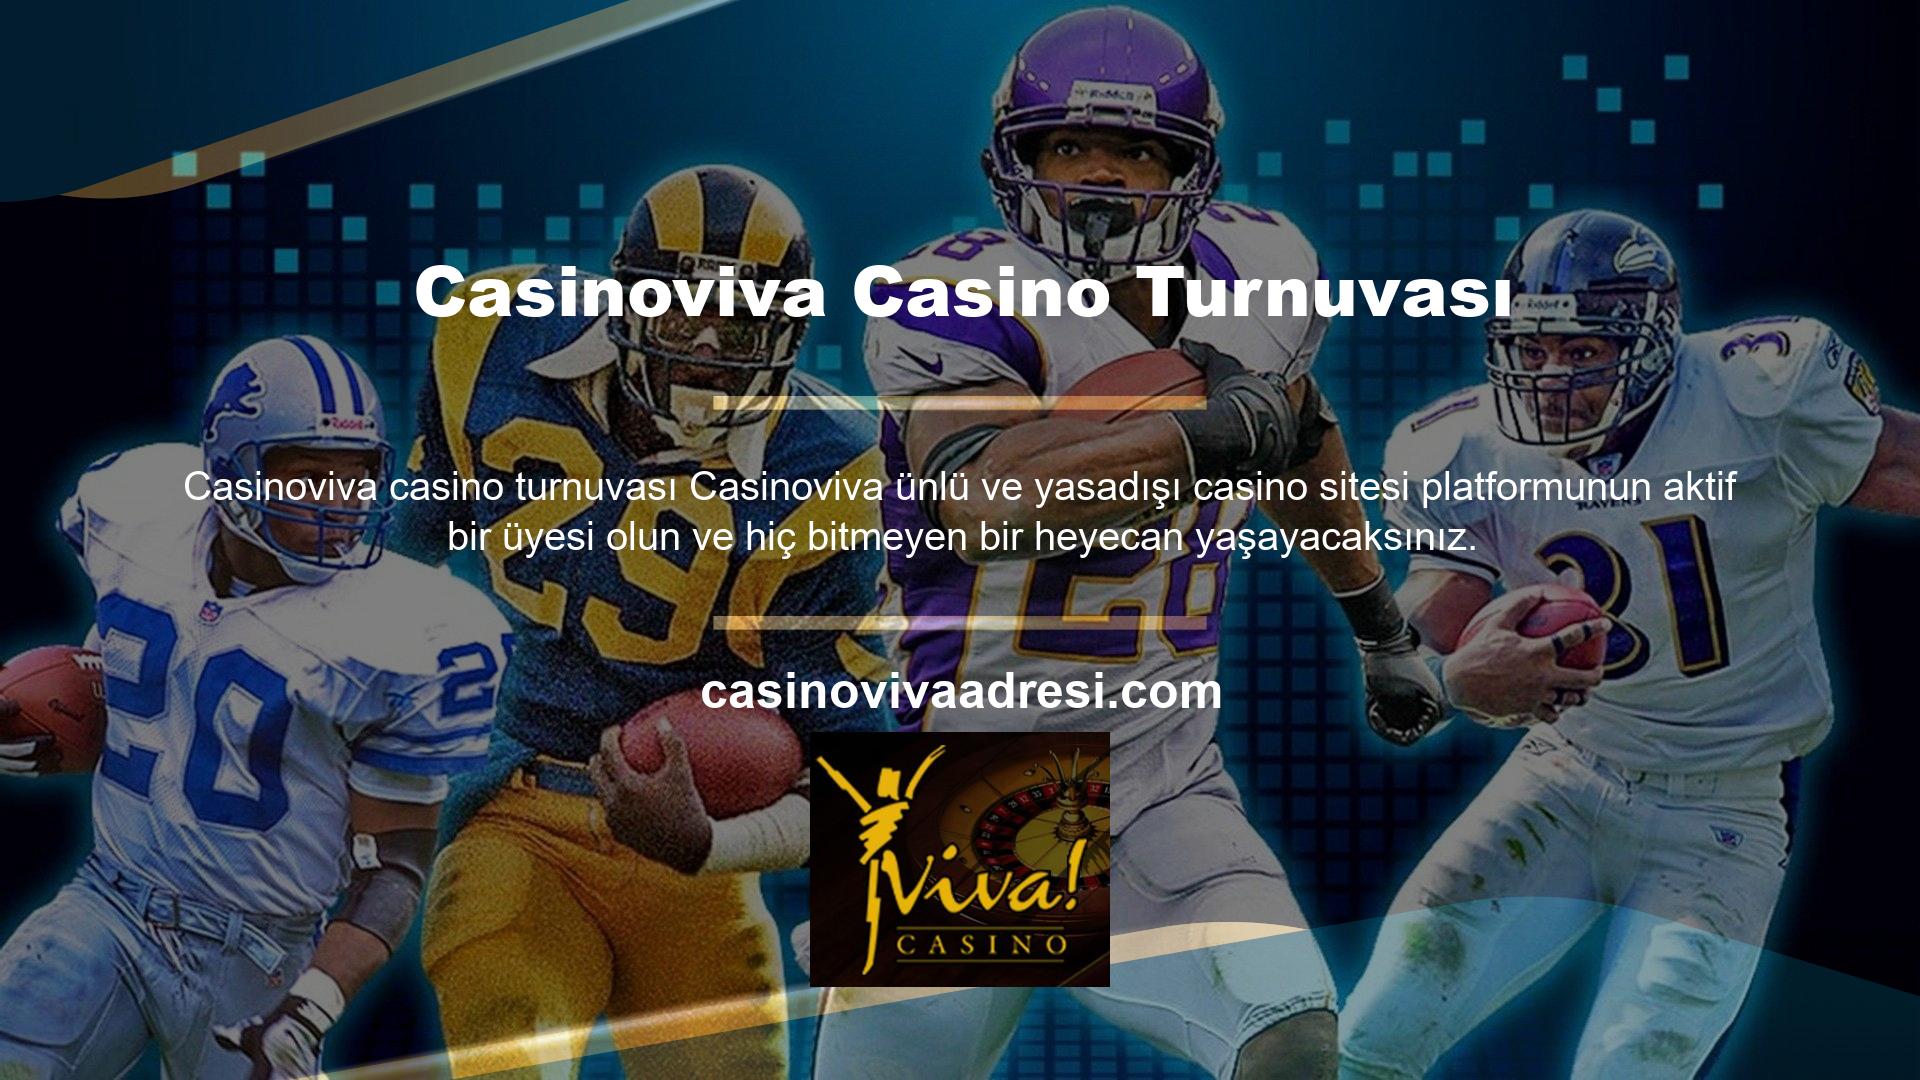 Periyodik olarak üyeyle Casinoviva Casino turnuvası hakkında bilgi almak üzere iletişime geçilir